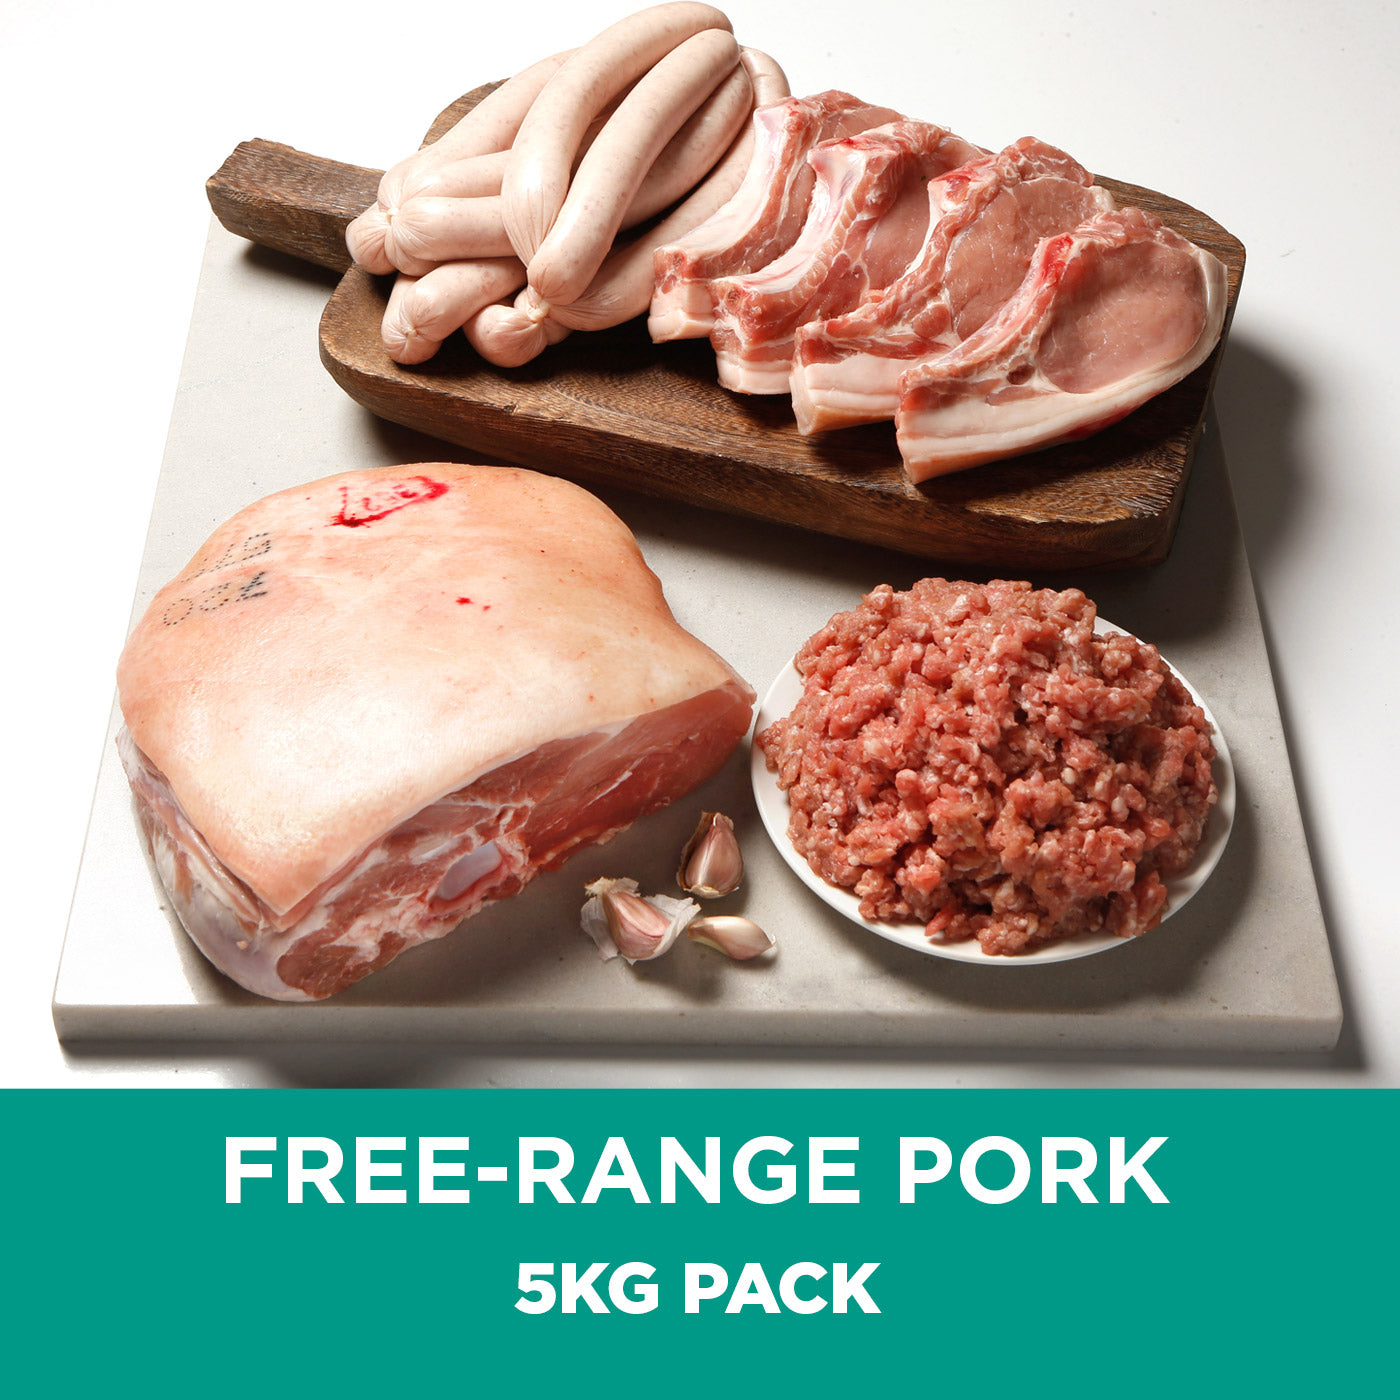 Pre-order Free-Range Pork Packs